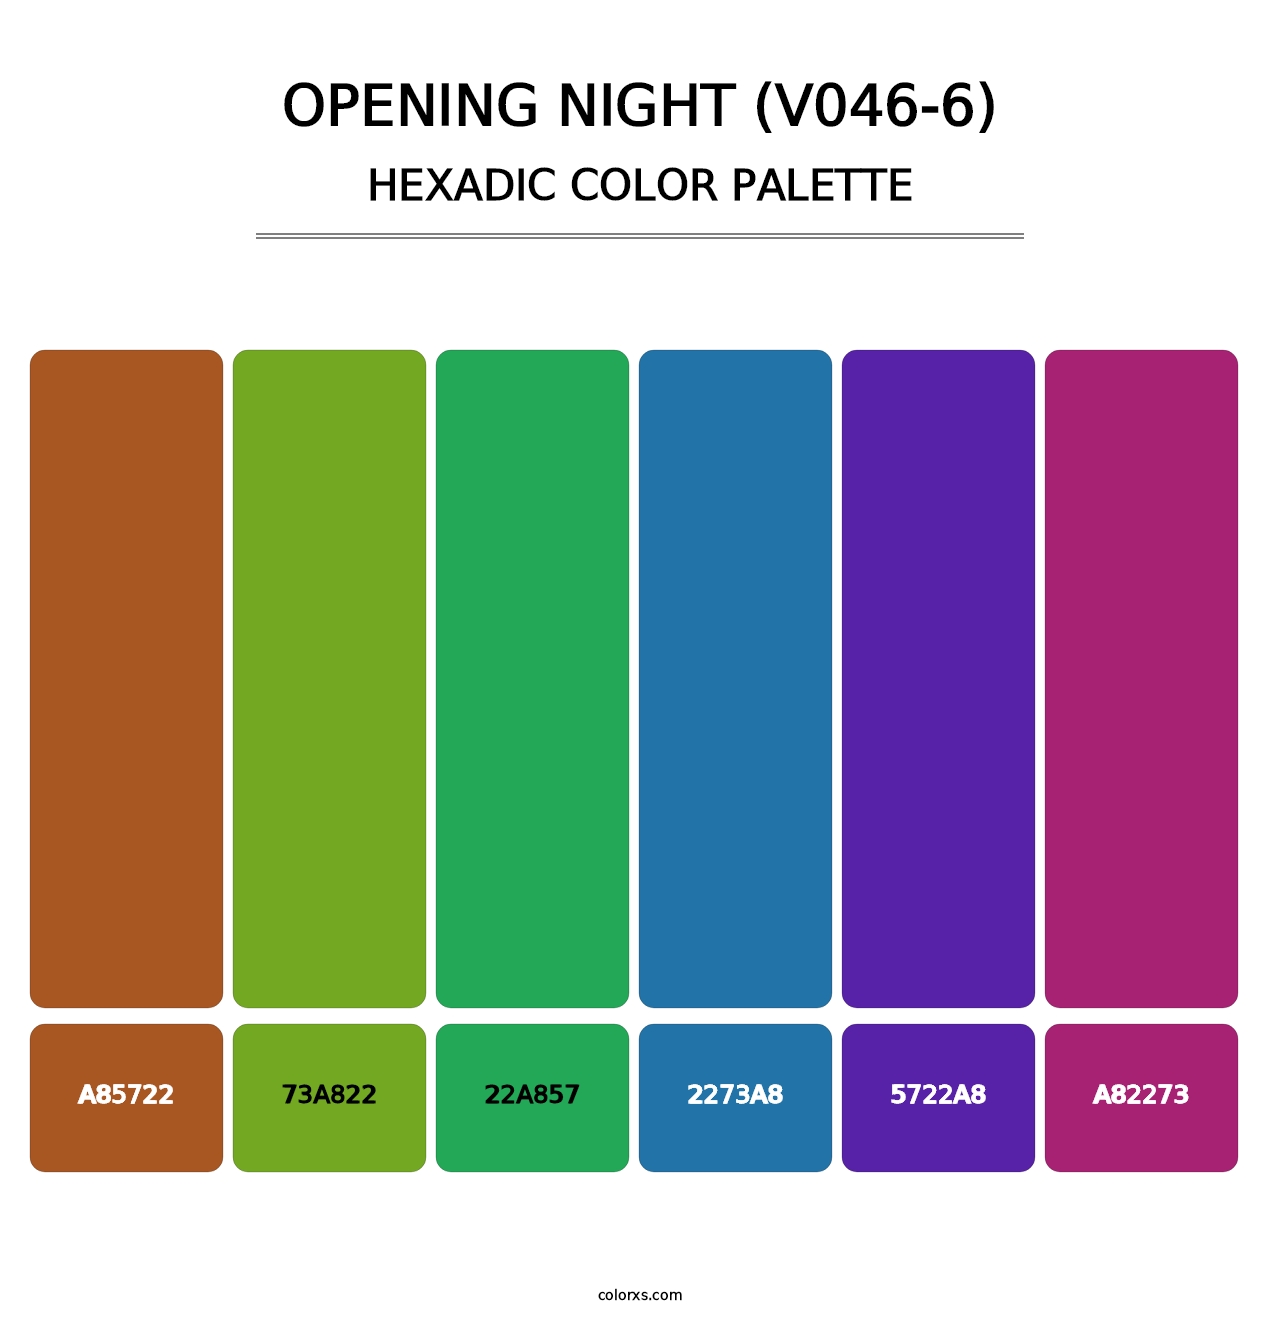 Opening Night (V046-6) - Hexadic Color Palette